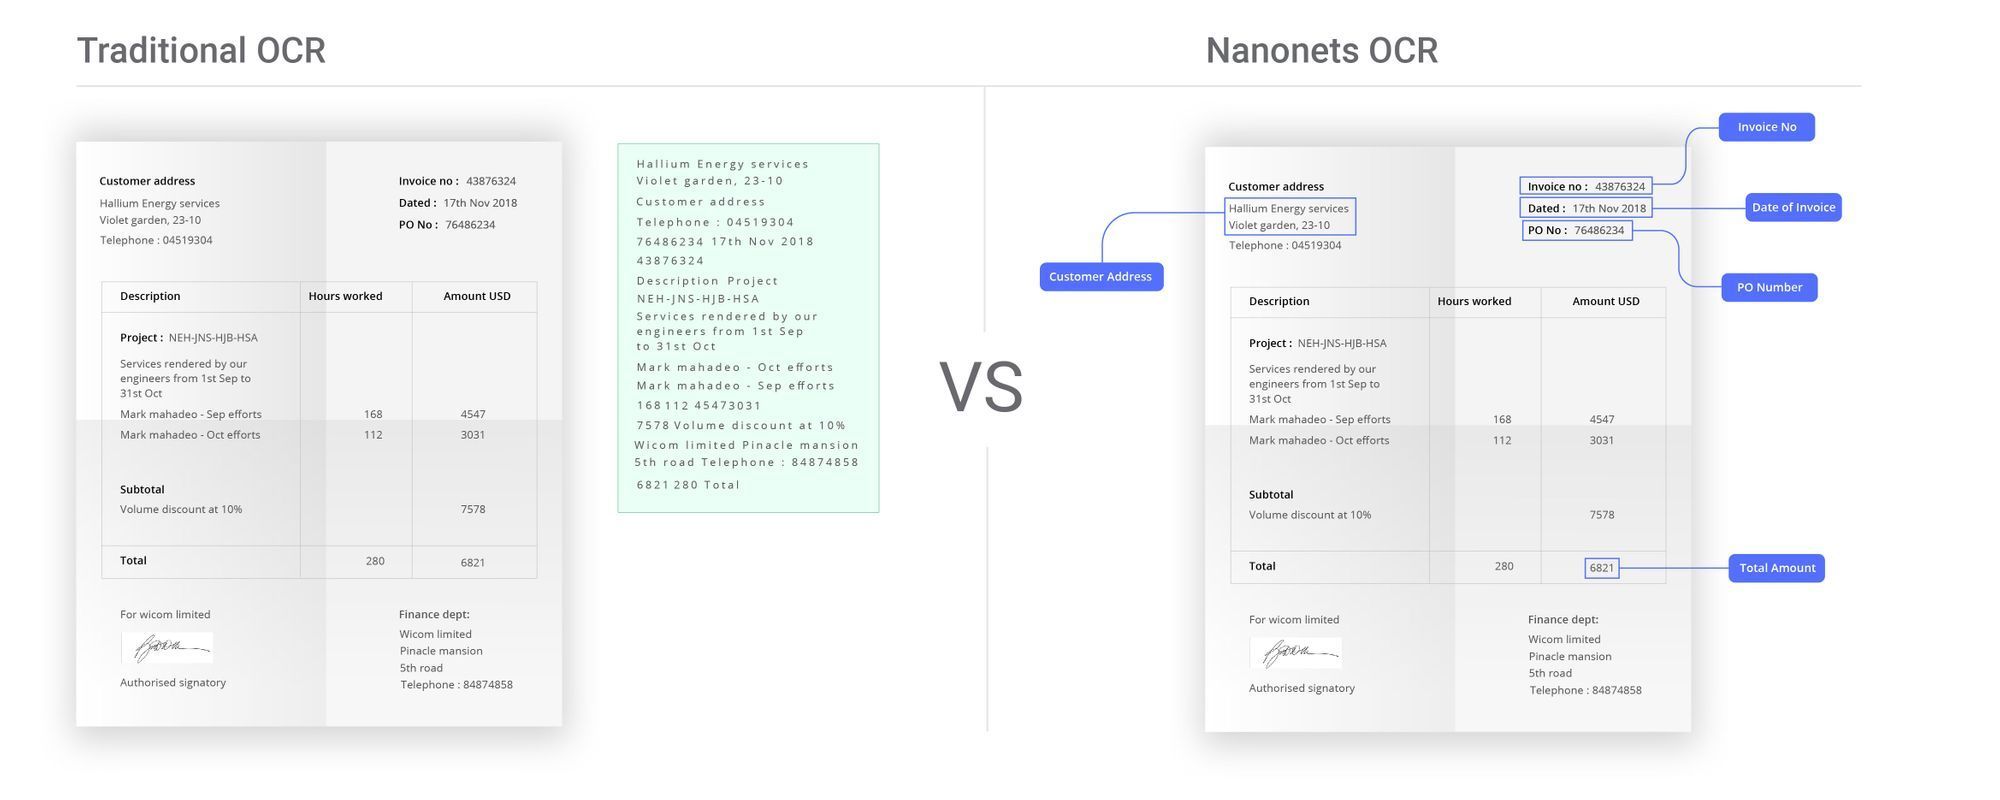 Imagen que ilustra las ventajas de Nanonets OCR para la automatización de la entrada de pedidos en comparación con las herramientas de OCR tradicionales